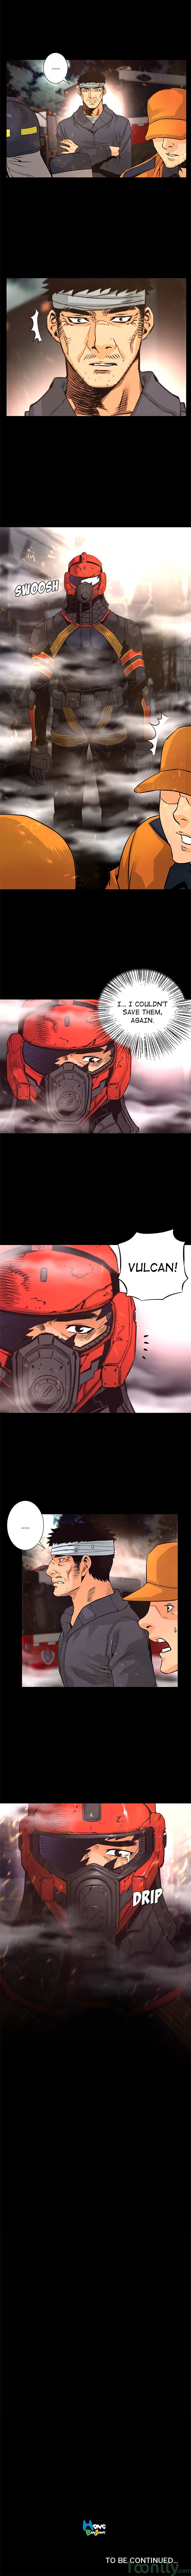 Vulcan image